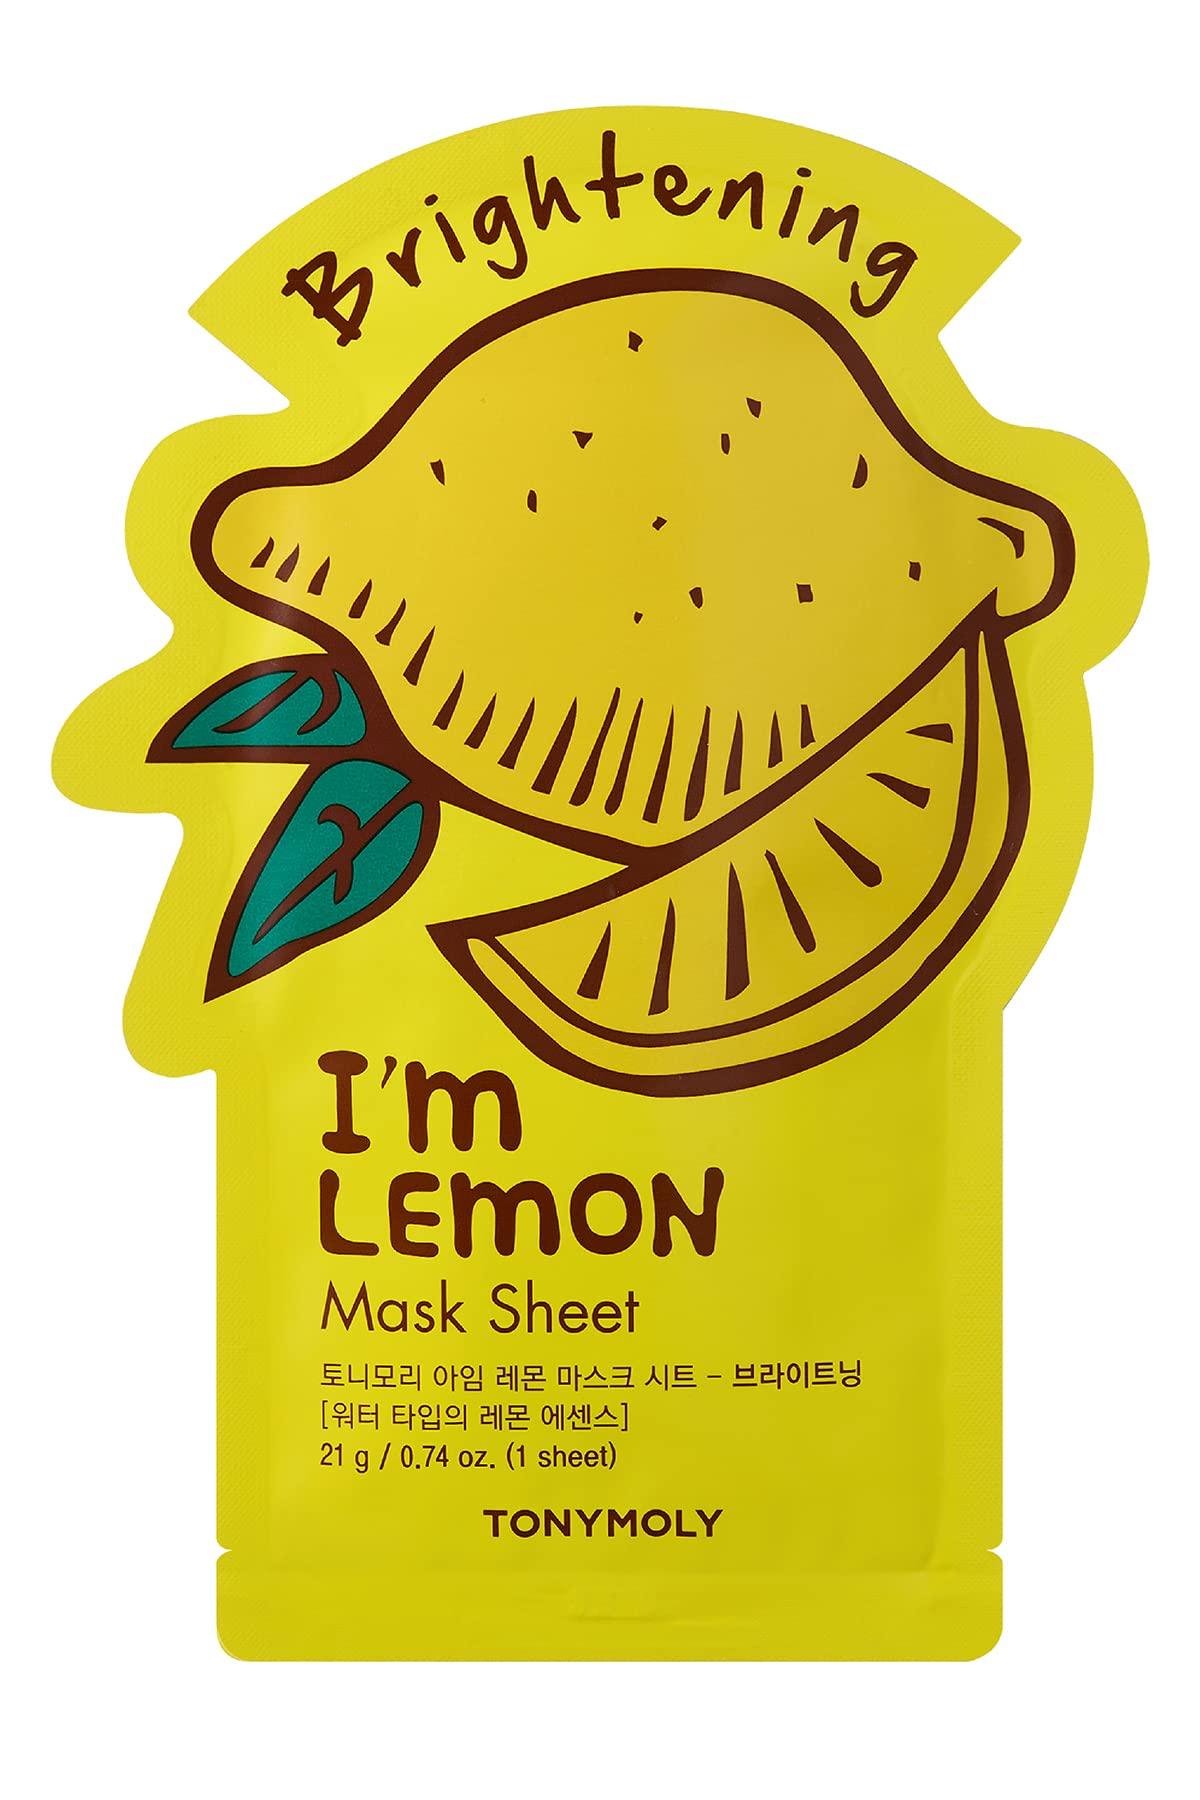 TONYMOLY I'm Lemon Sheet Mask - Brightening - Face Mask